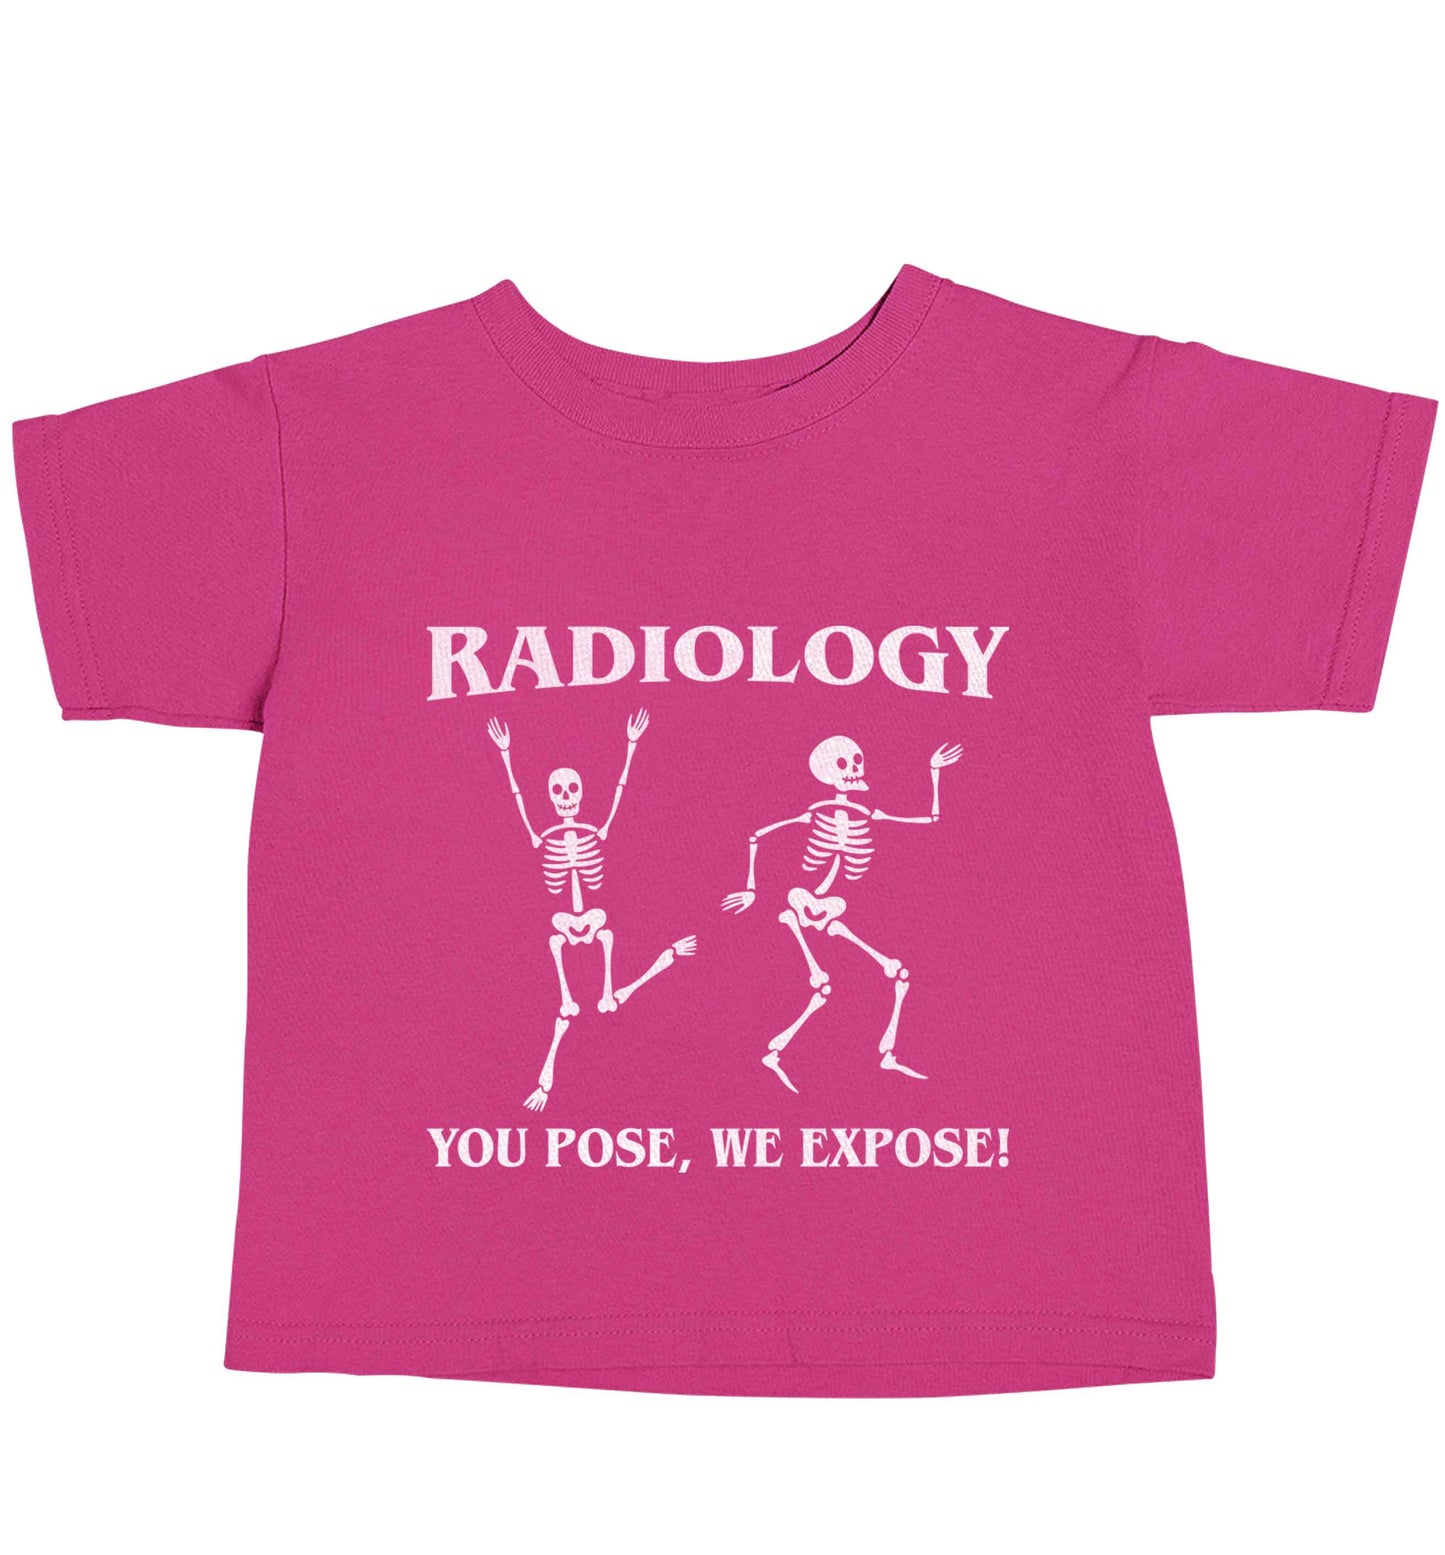 Radiology you pose we expose pink baby toddler Tshirt 2 Years